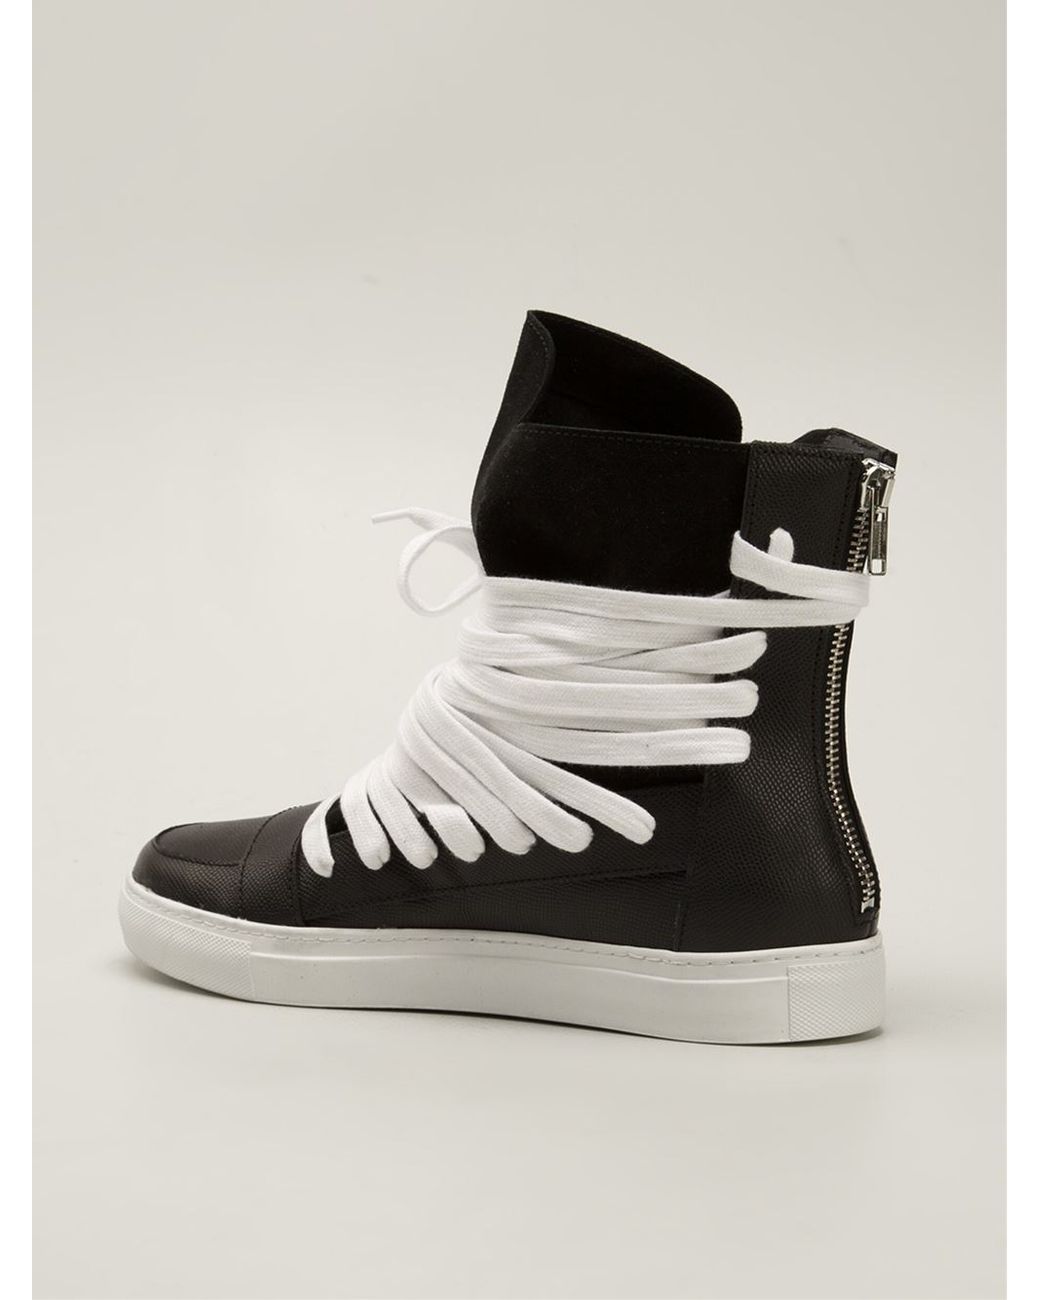 Kris Van Assche Hi-Top Sneakers Black for Men |